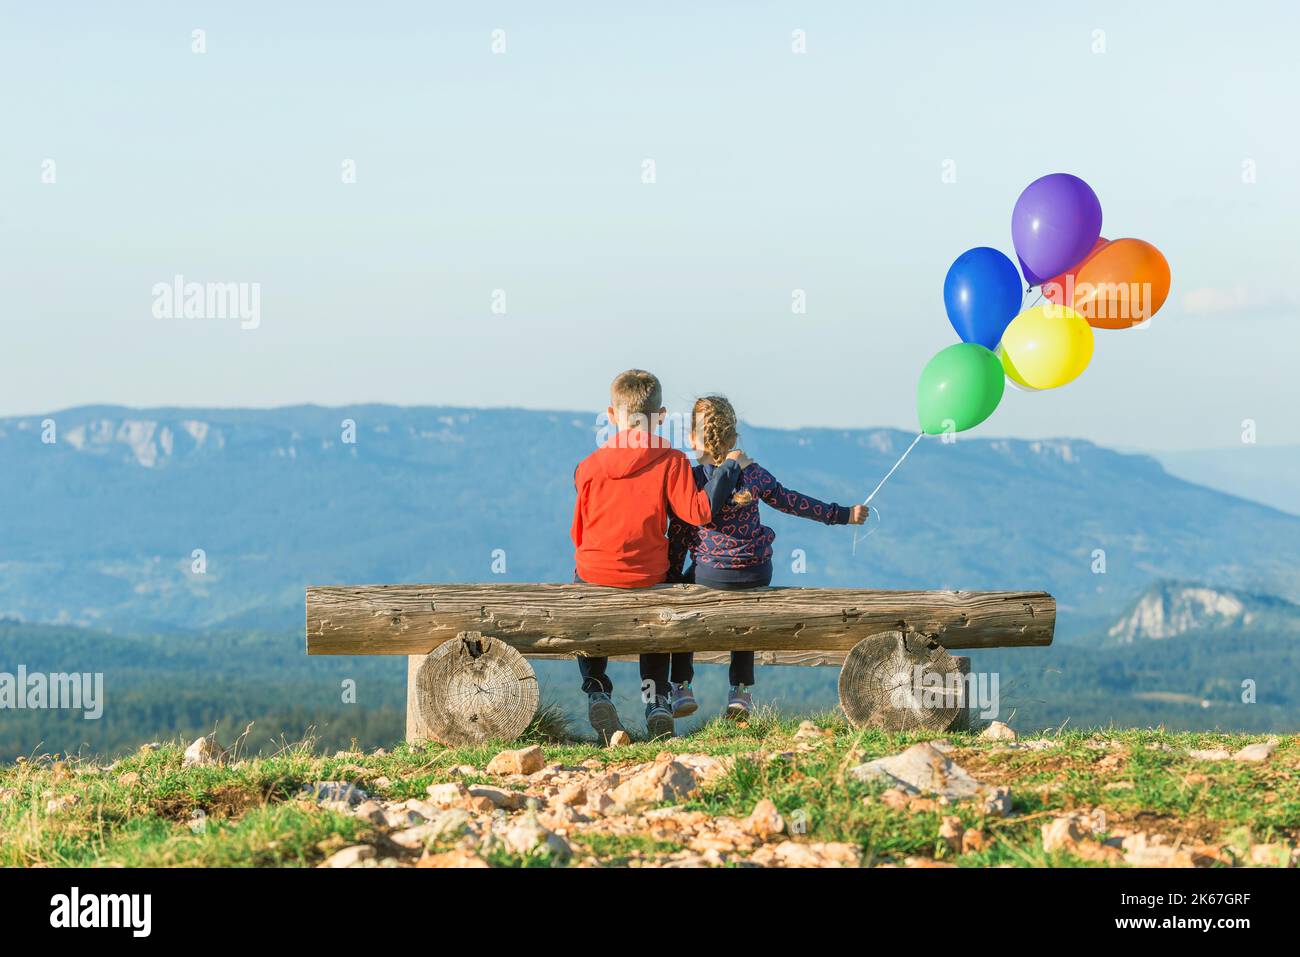 Ragazza e un ragazzo sono seduti su una panchina con palloncini che oscillano nel vento. Vista dal retro. Montagna sullo sfondo Foto Stock